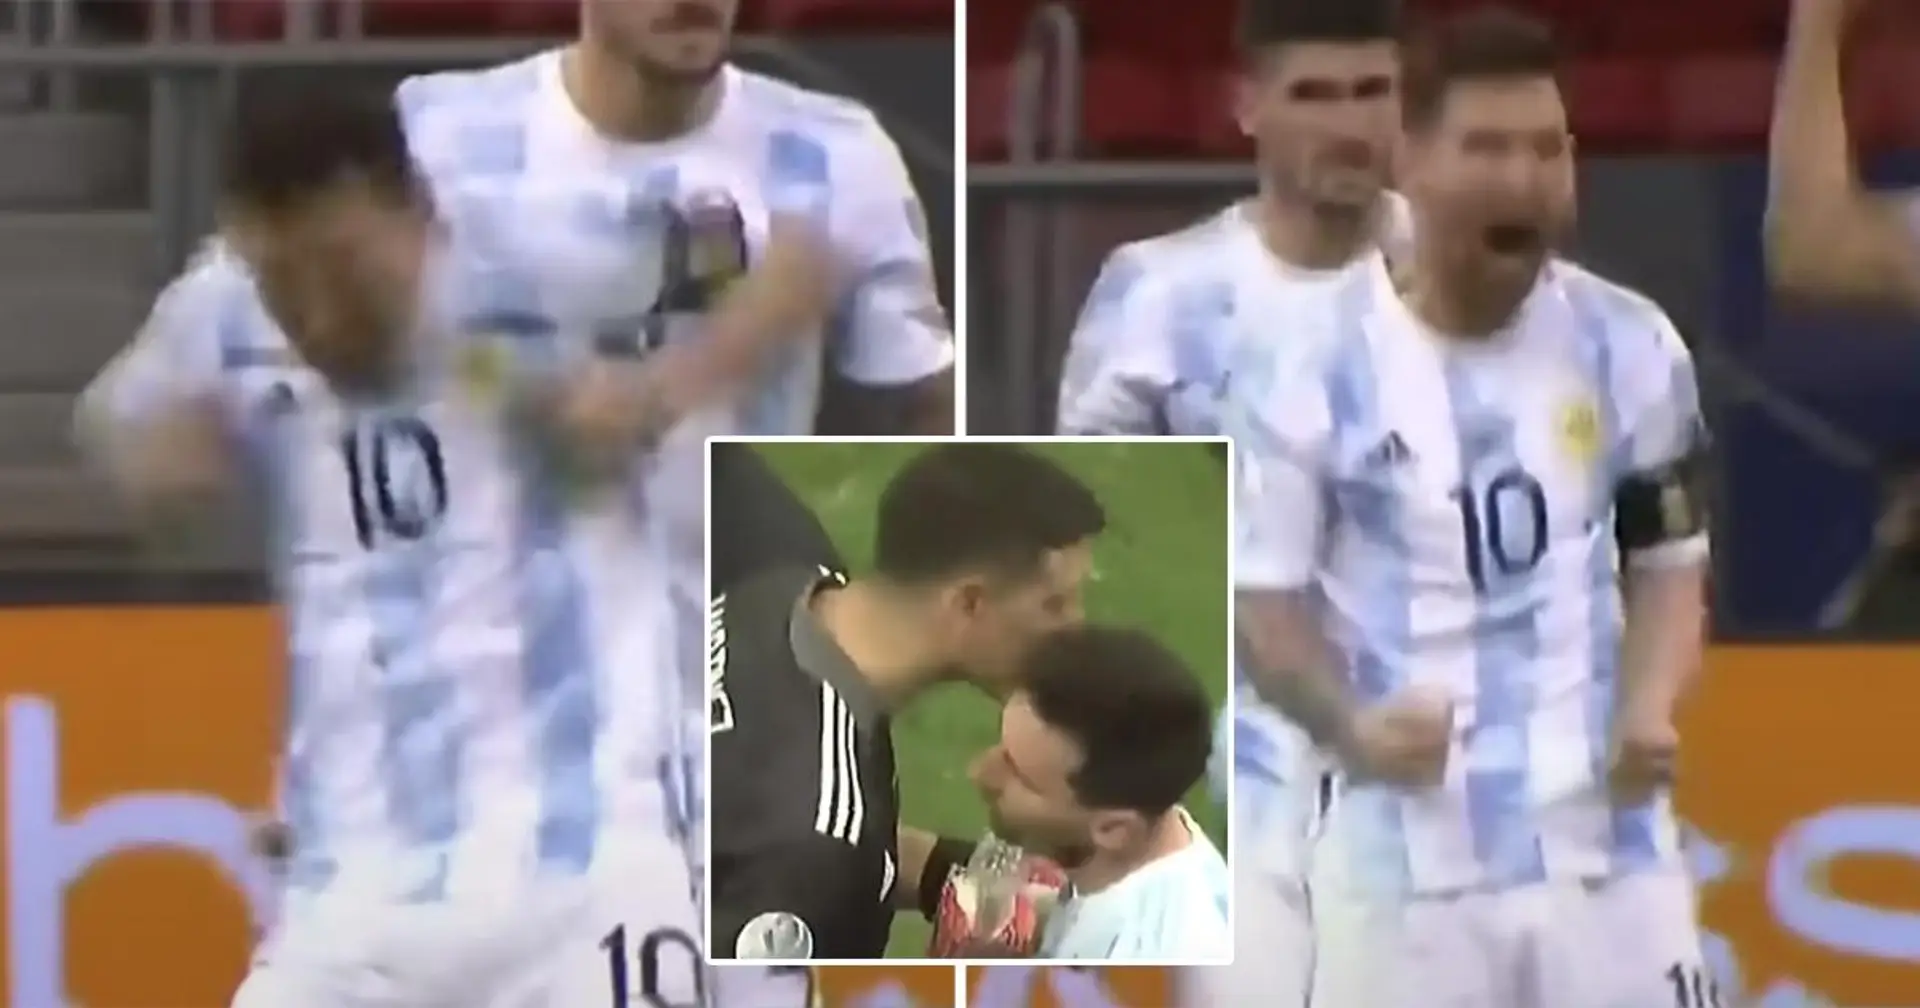 Cris, sourires, frustration : les émotions de Messi lors de la séance de tirs au but  épique vs Colombie filmées